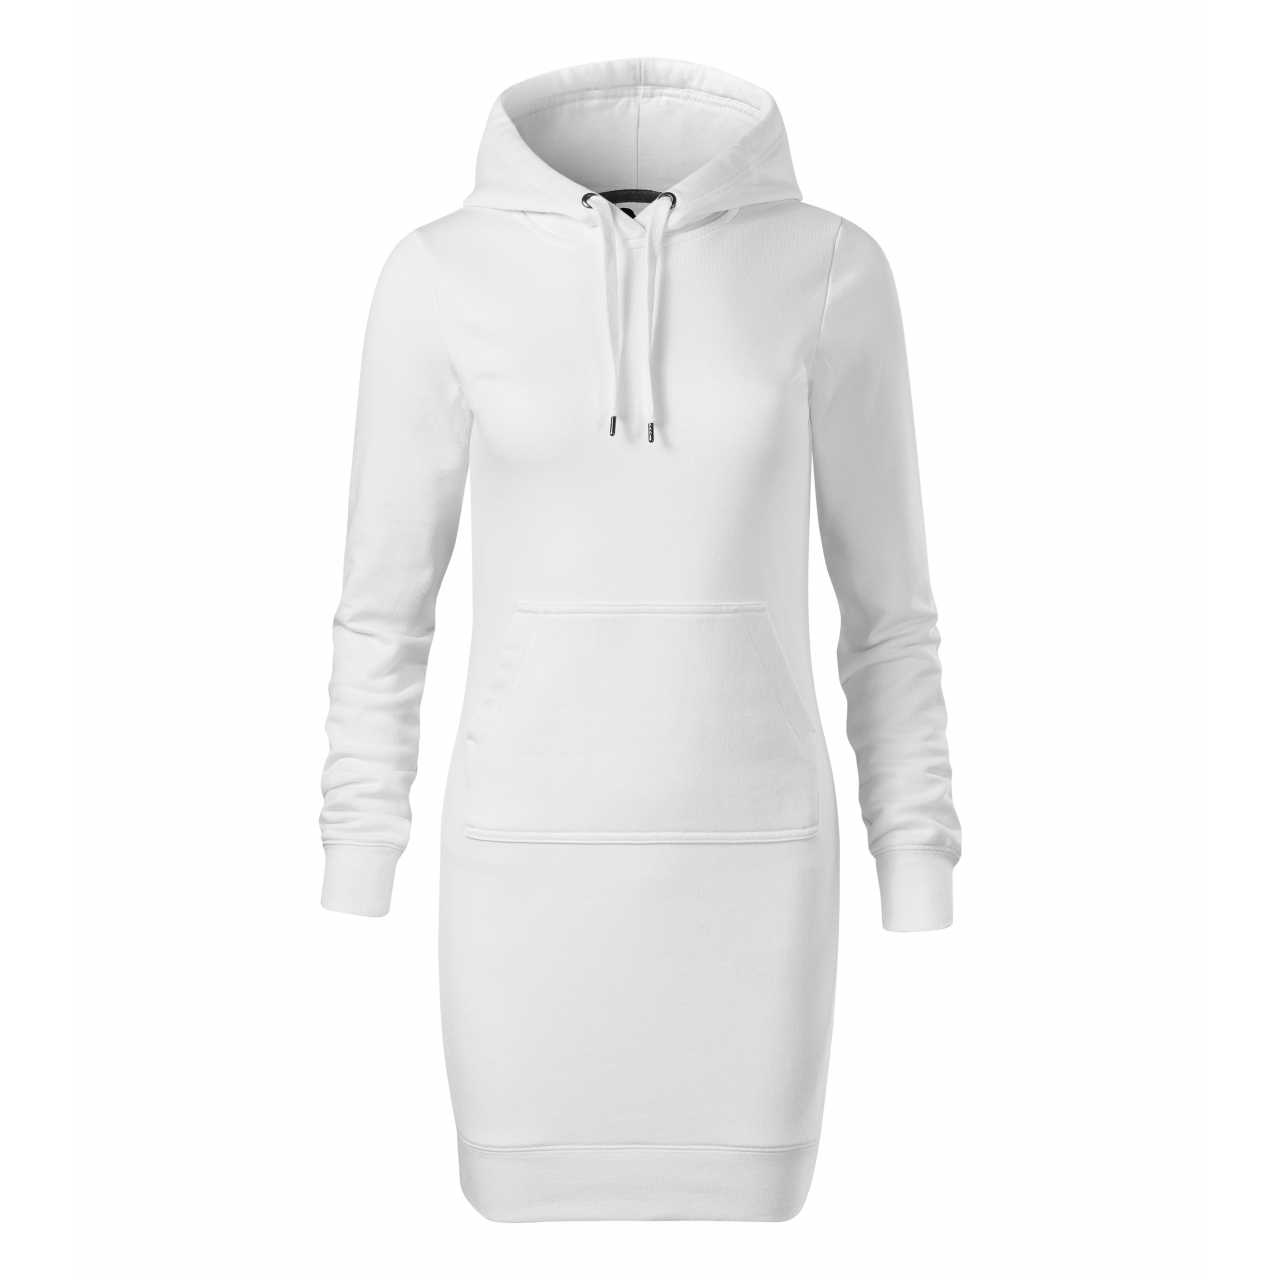 Šaty dámské Malfini Snap - bílé, XL